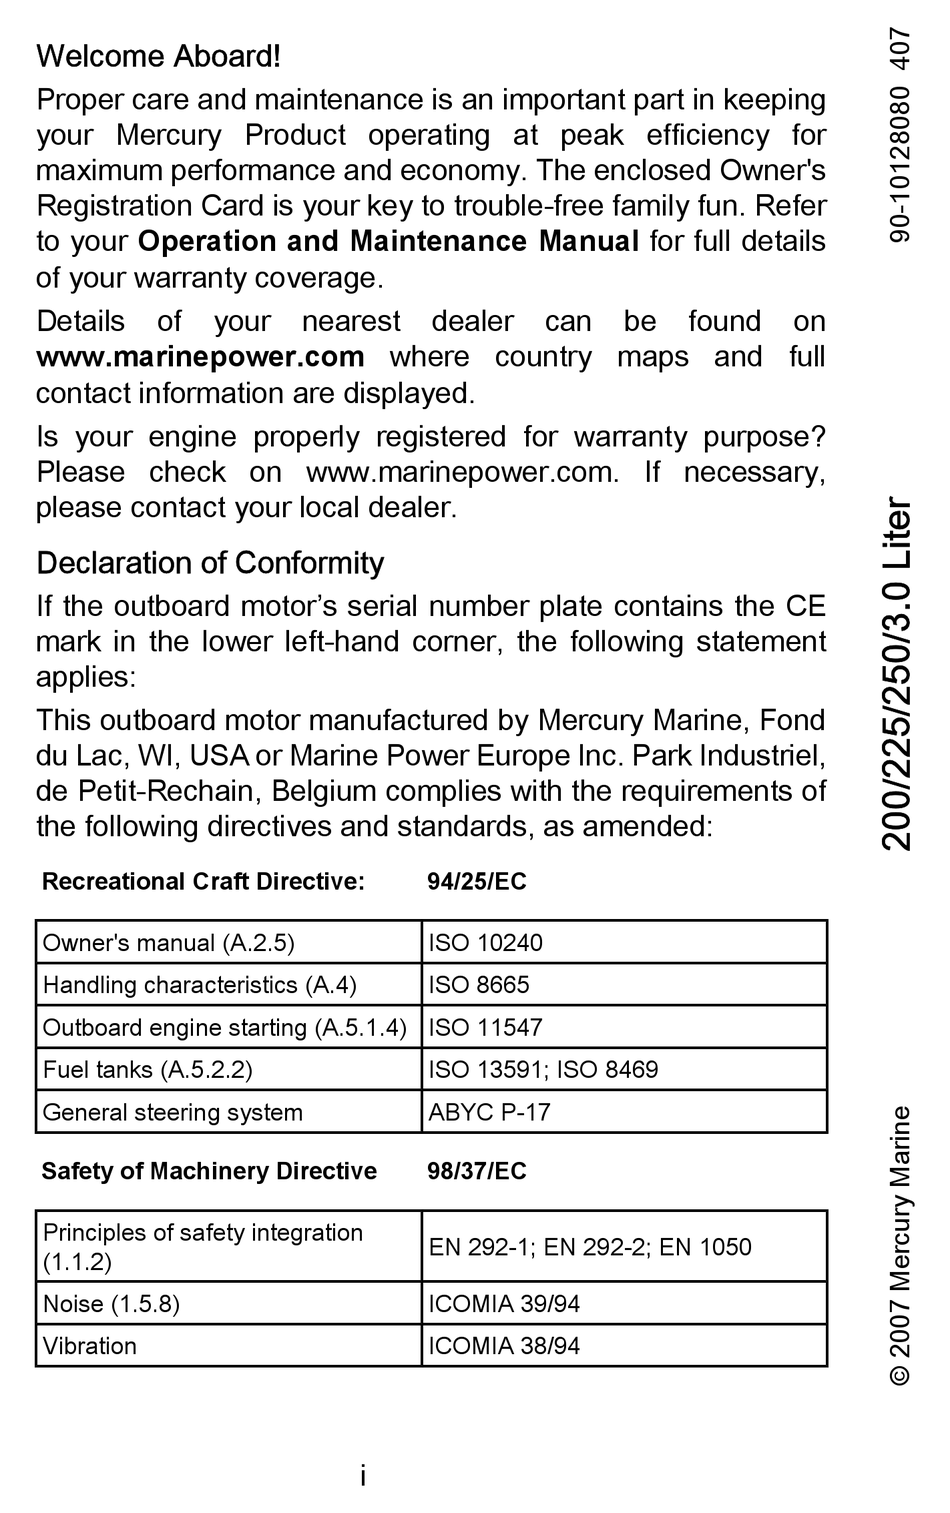 MERCURY 200 USER MANUAL Pdf Download | ManualsLib